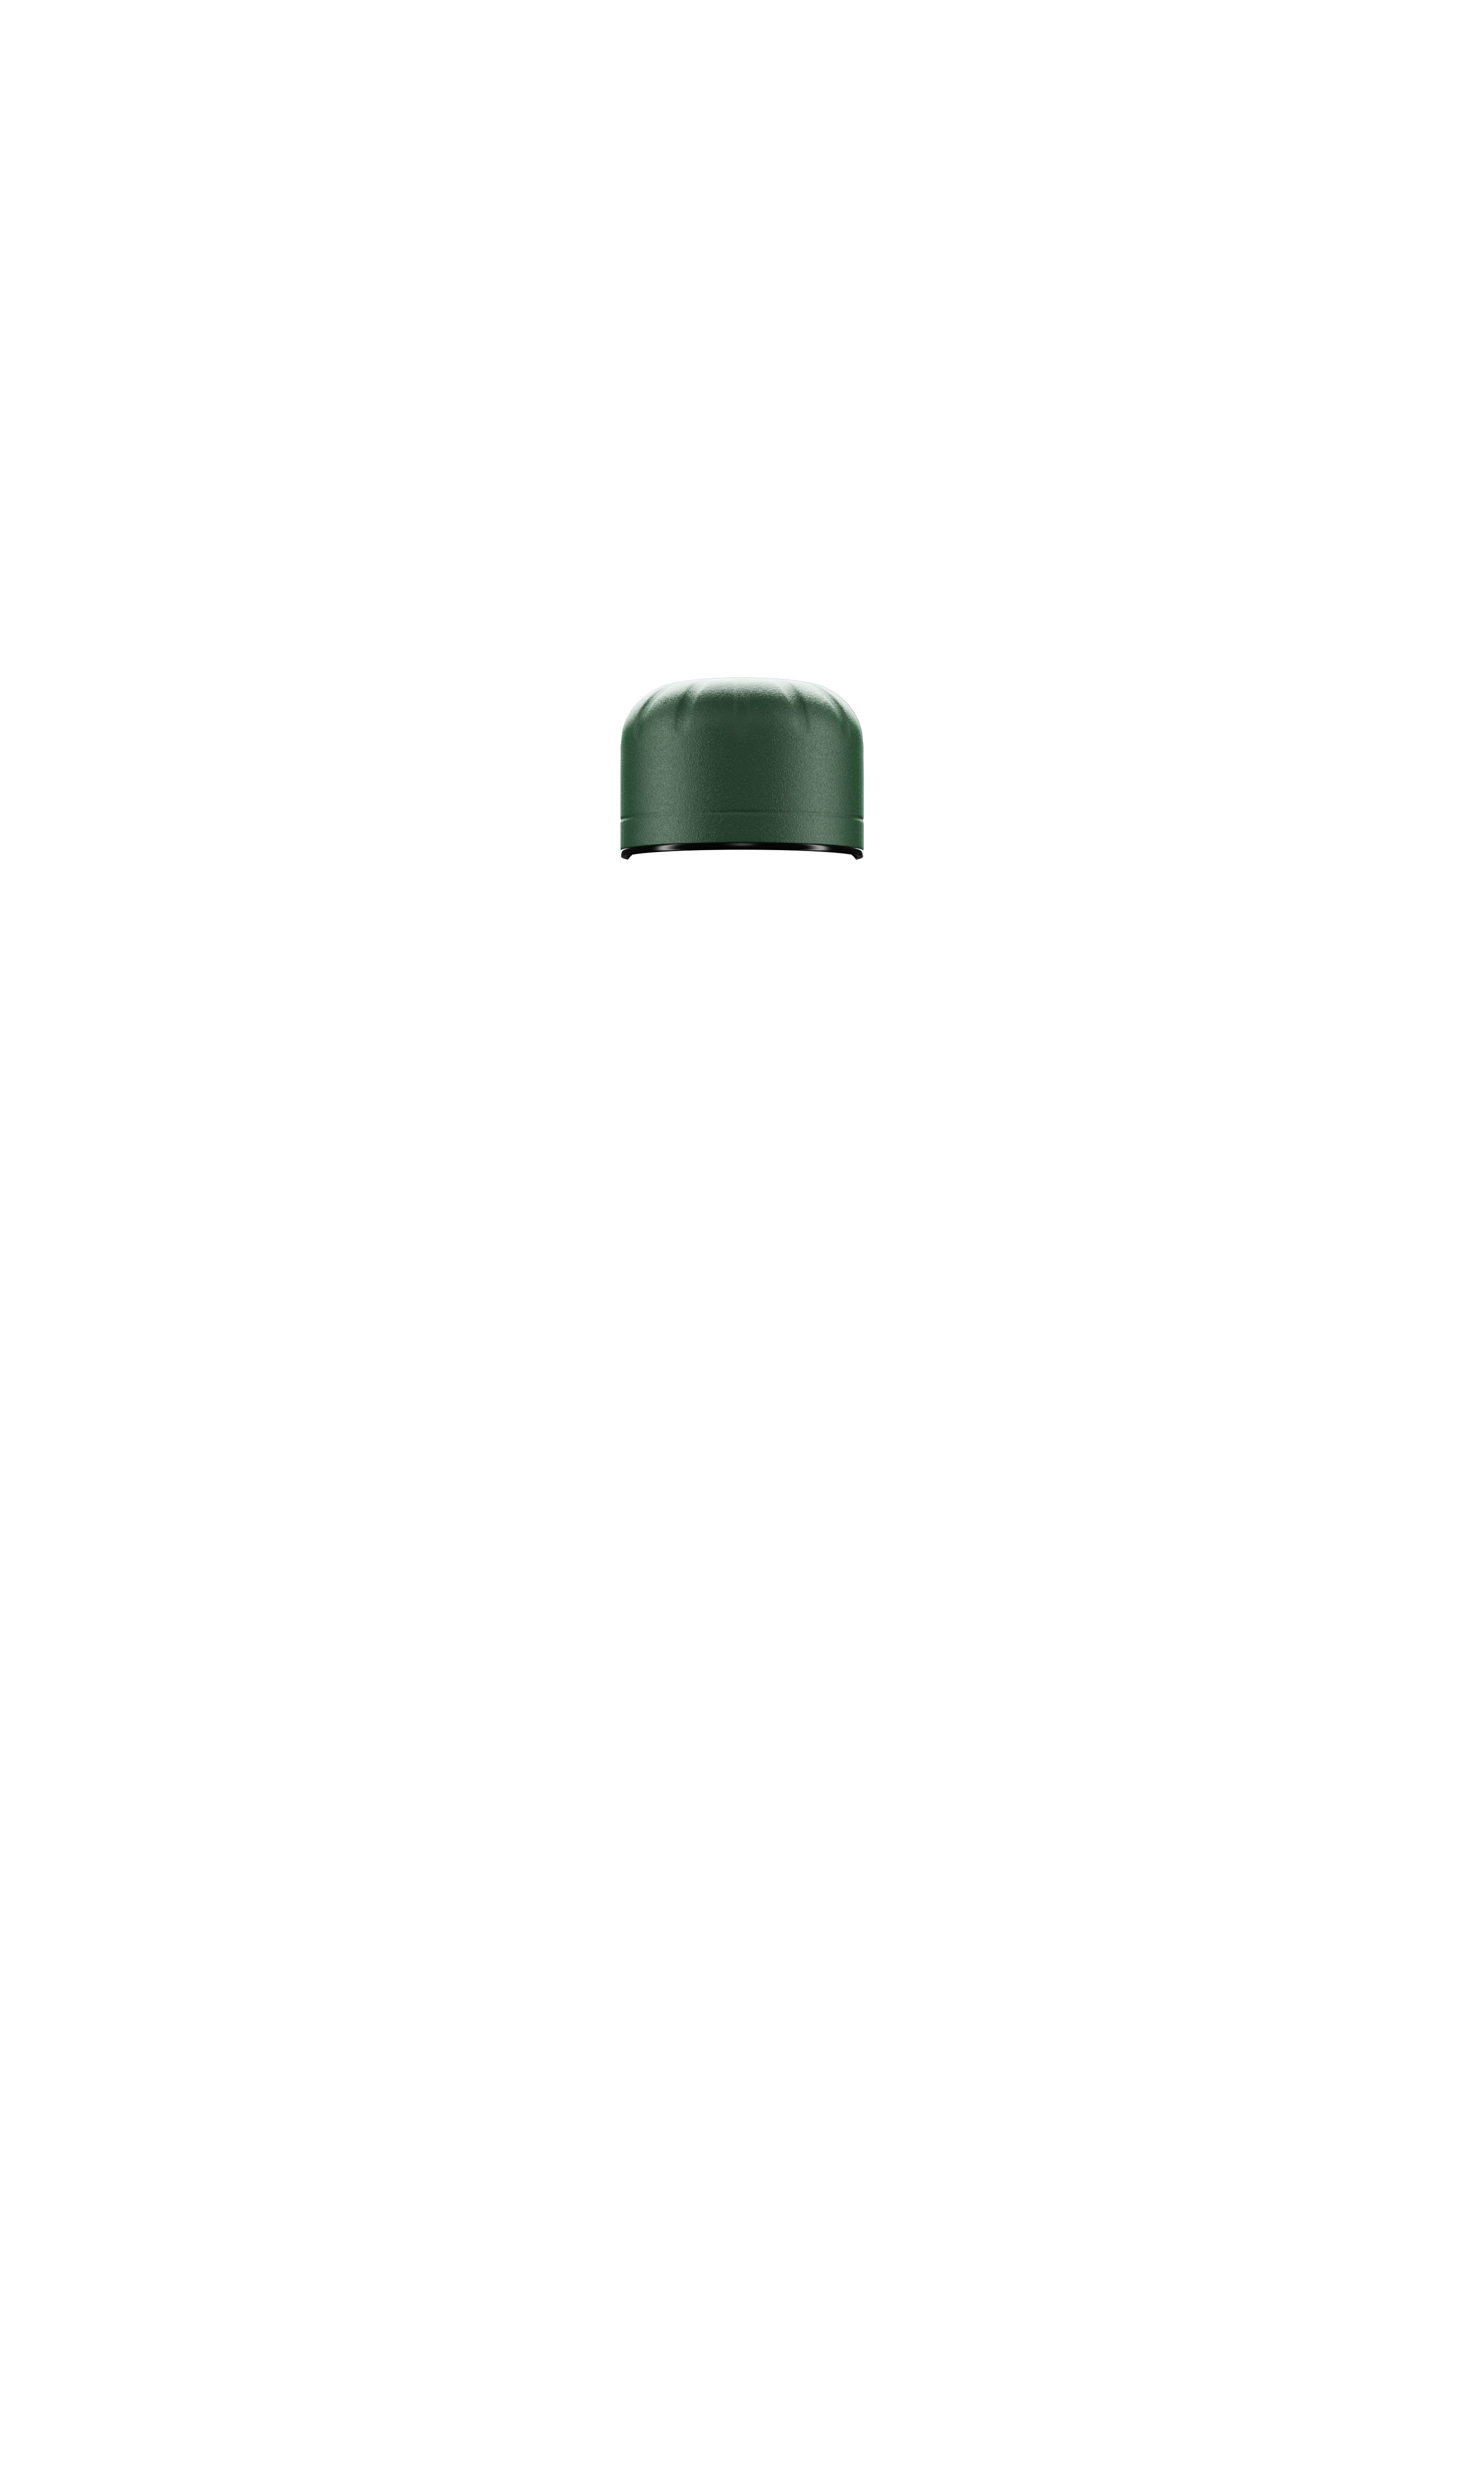 Víčko pro láhve Chilly's Bottles - více barev 260ml/500ml/750ml, edice Original Barva: matná zelená, Pro objem láhve: 750ml